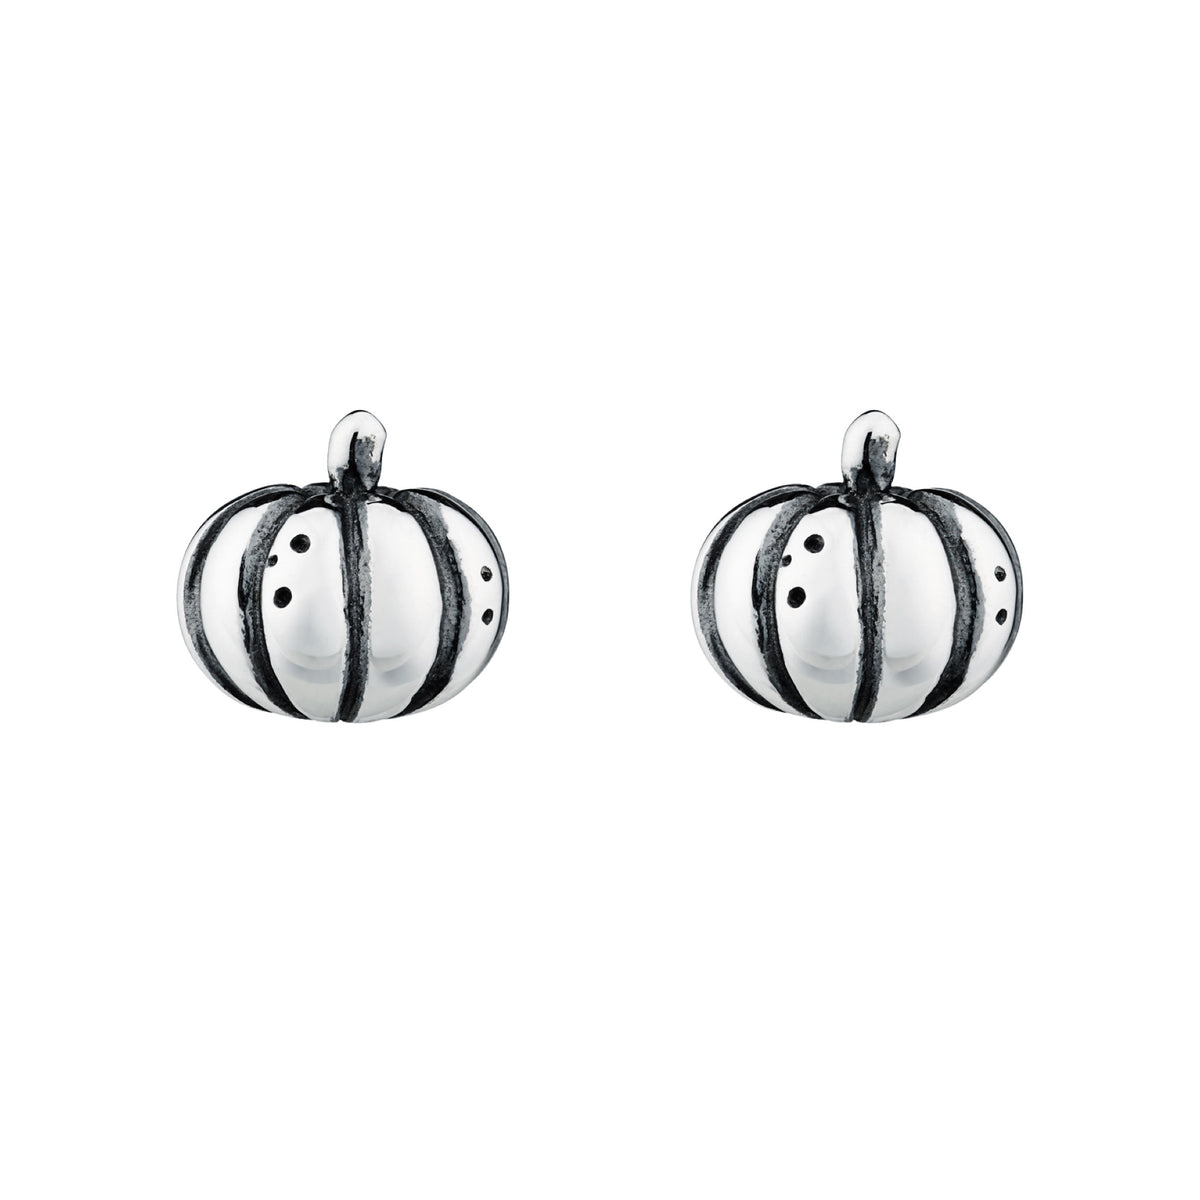 pumpkin stud earrings Halloween alternative witchy jewellery